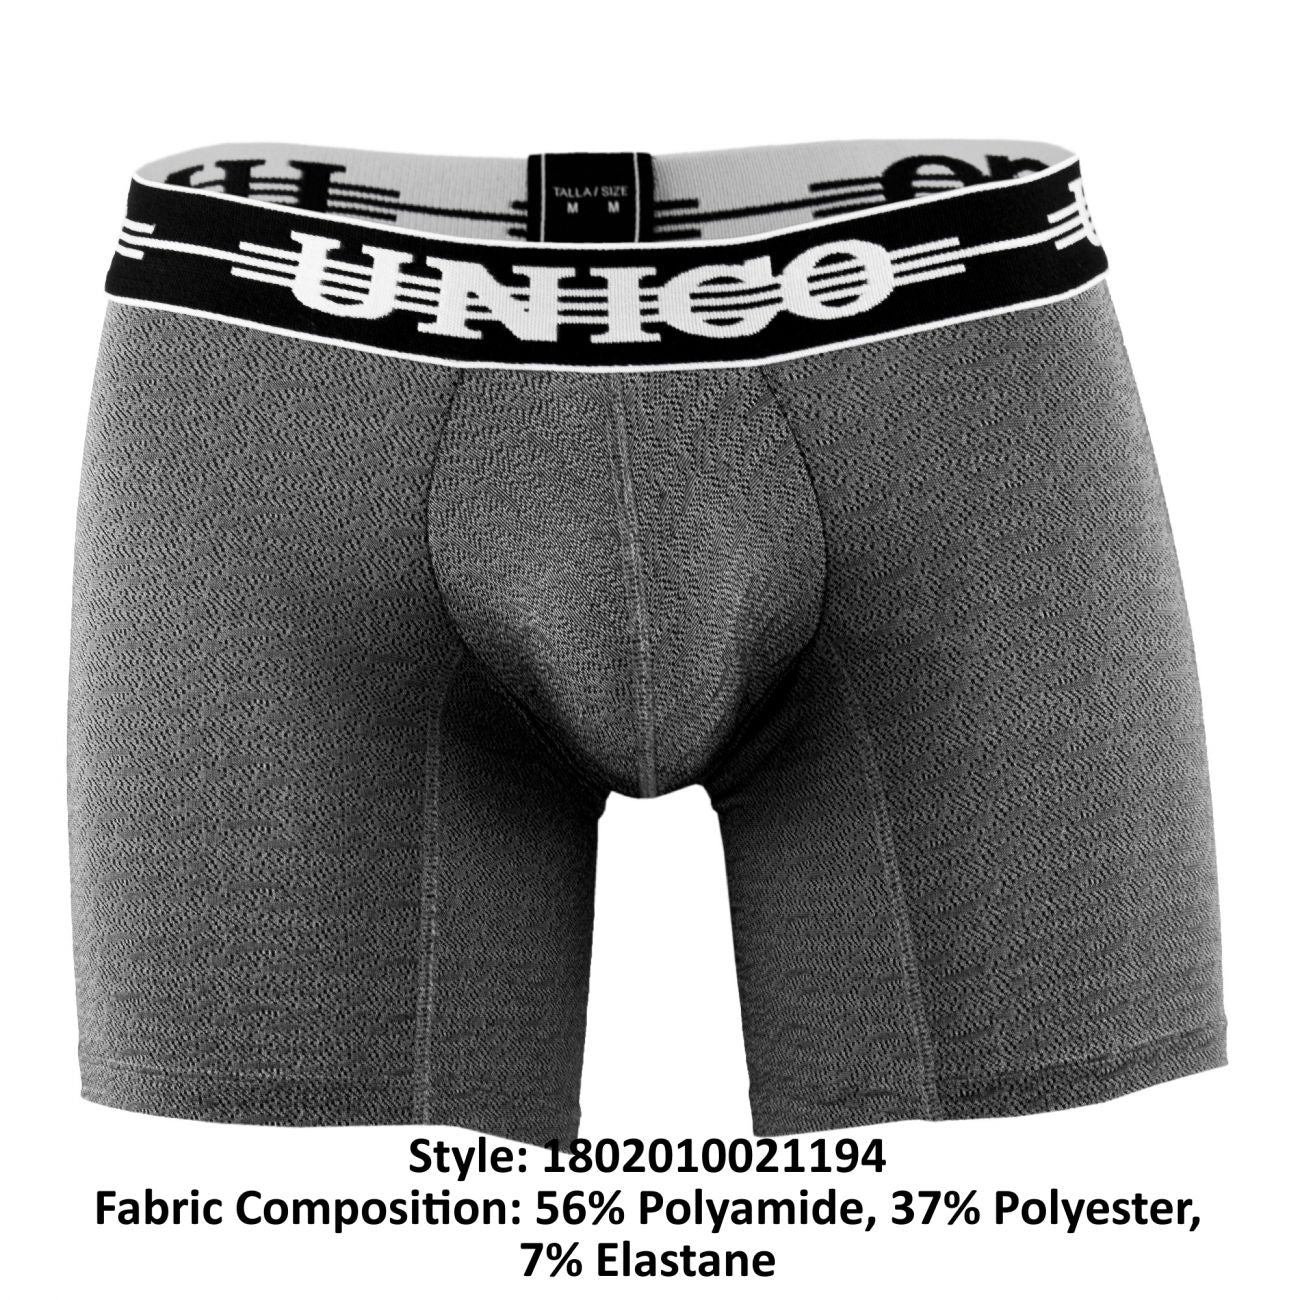 Unico 1802010021194 Boxer Briefs Self Color Gray